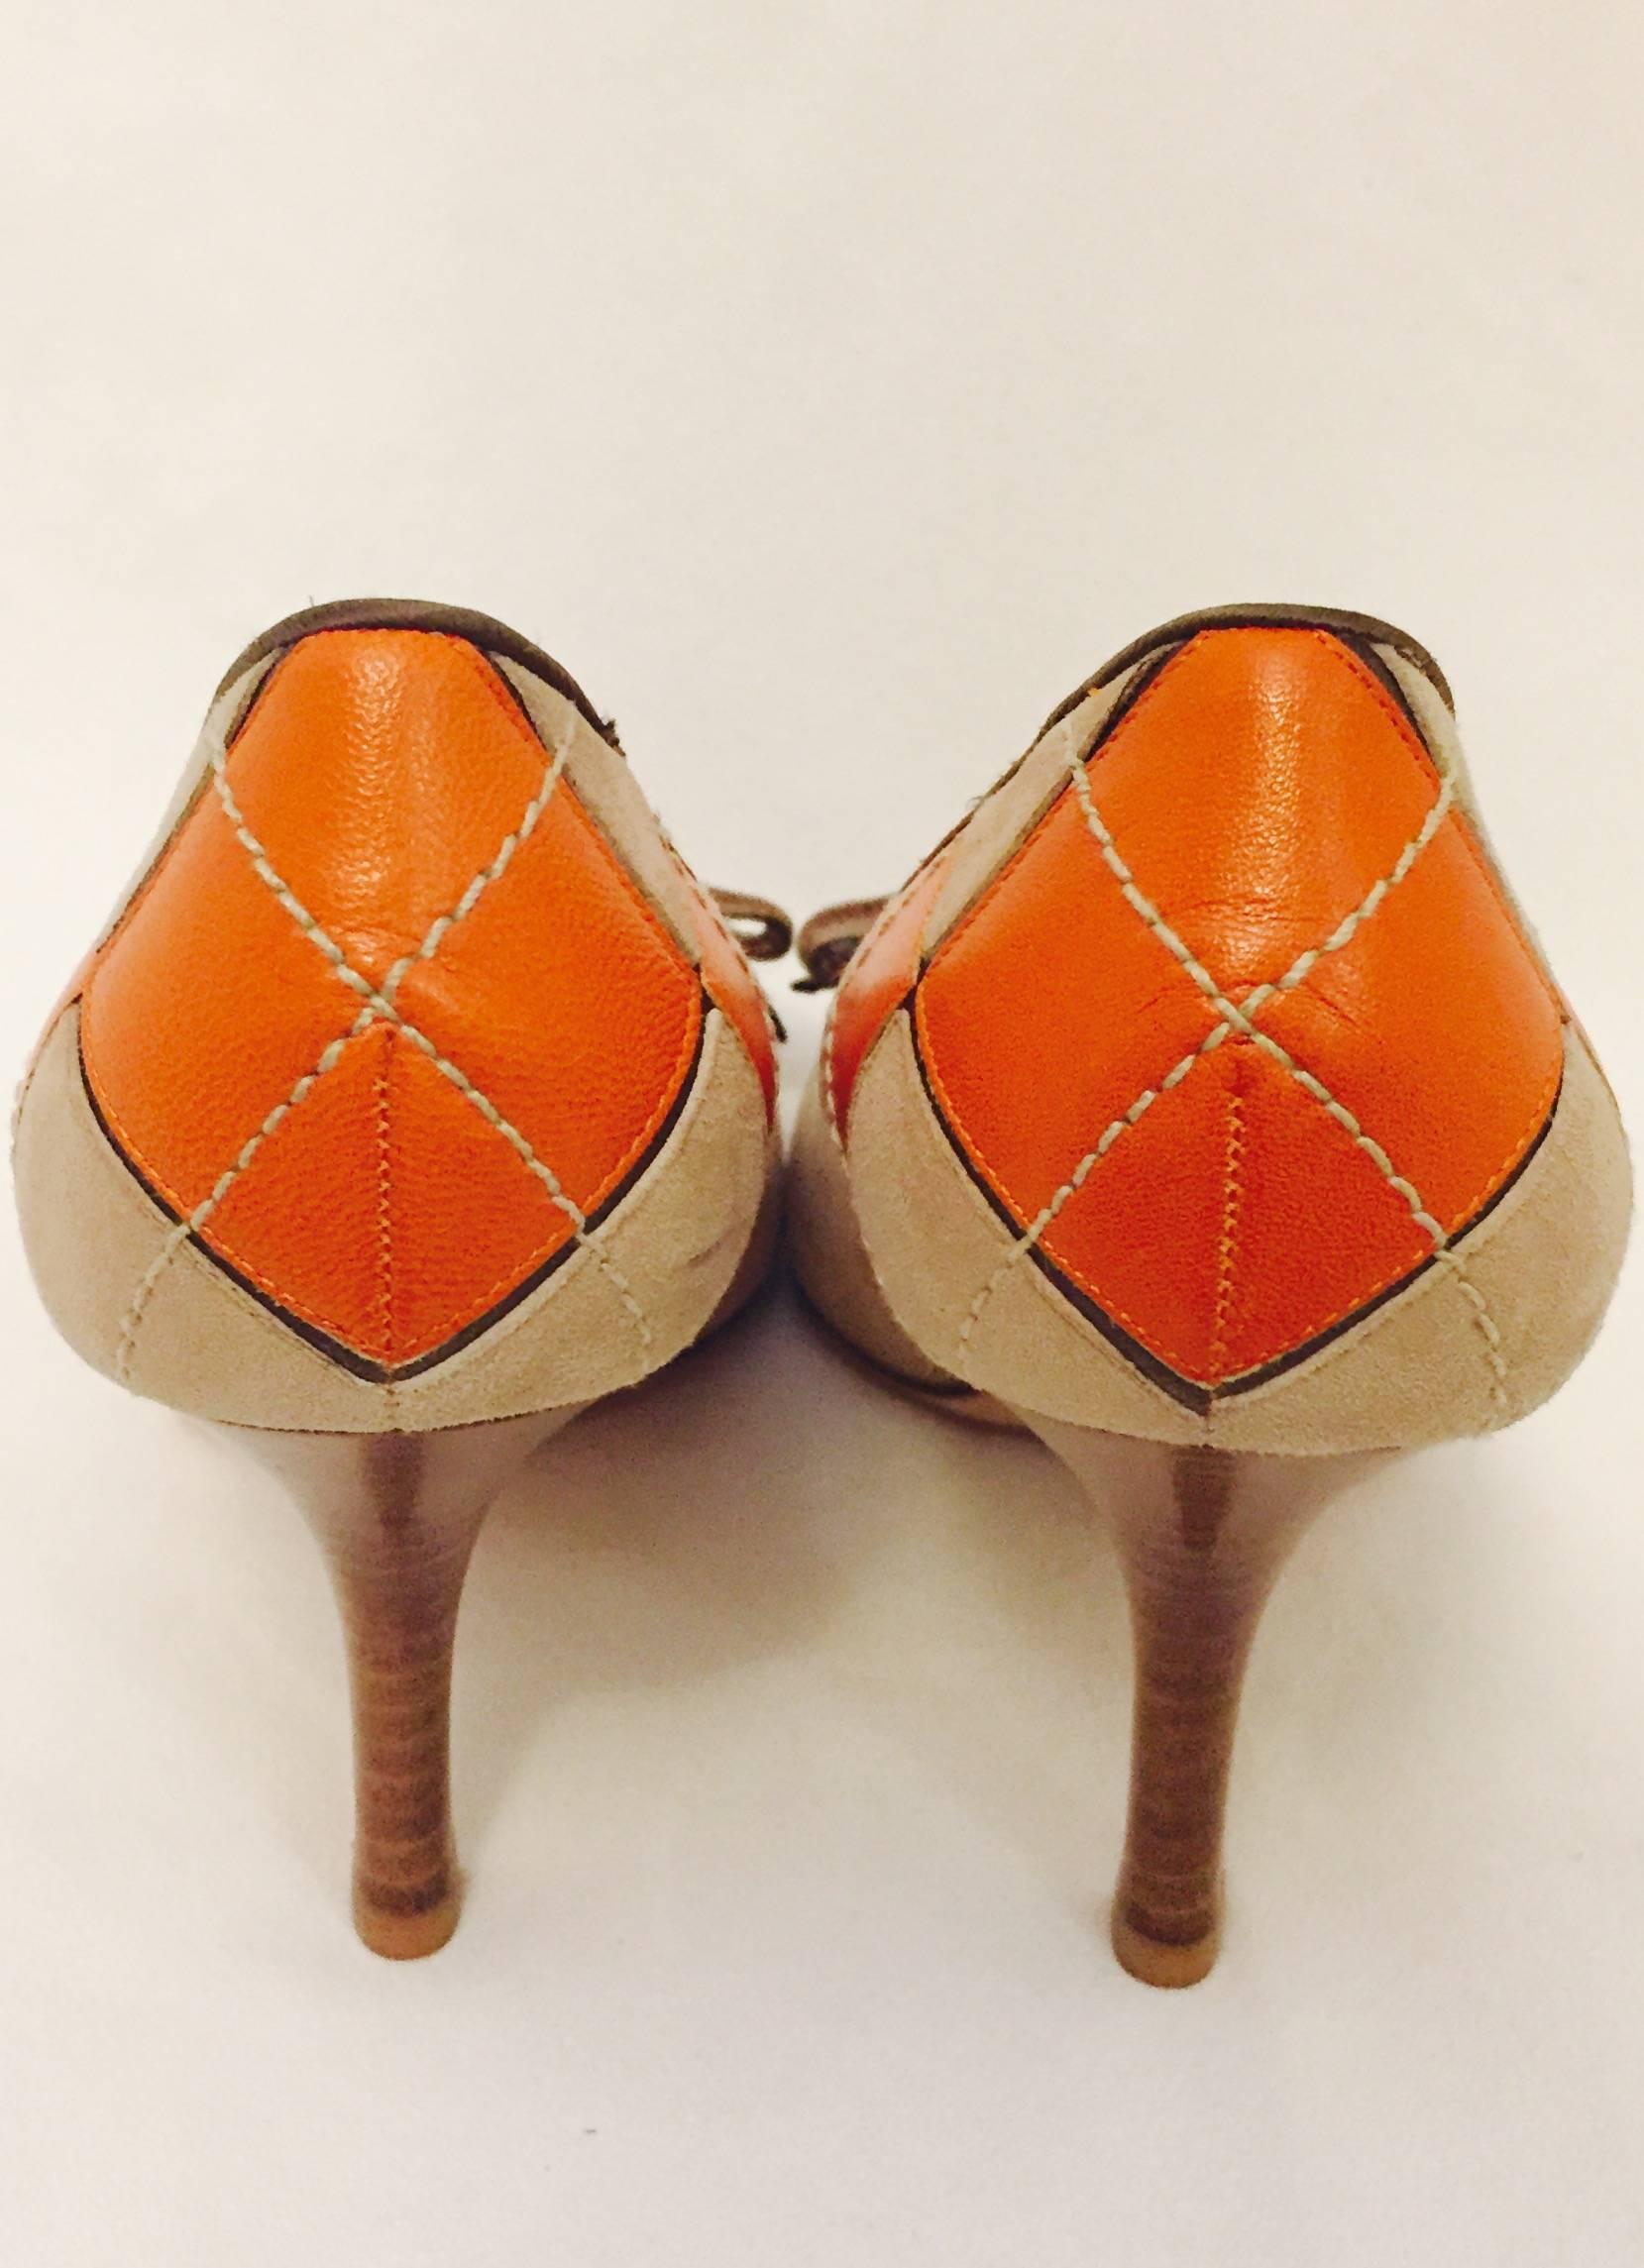 Women's Valentino Garavani Orange Leather and Beige Suede Argyle Pumps 